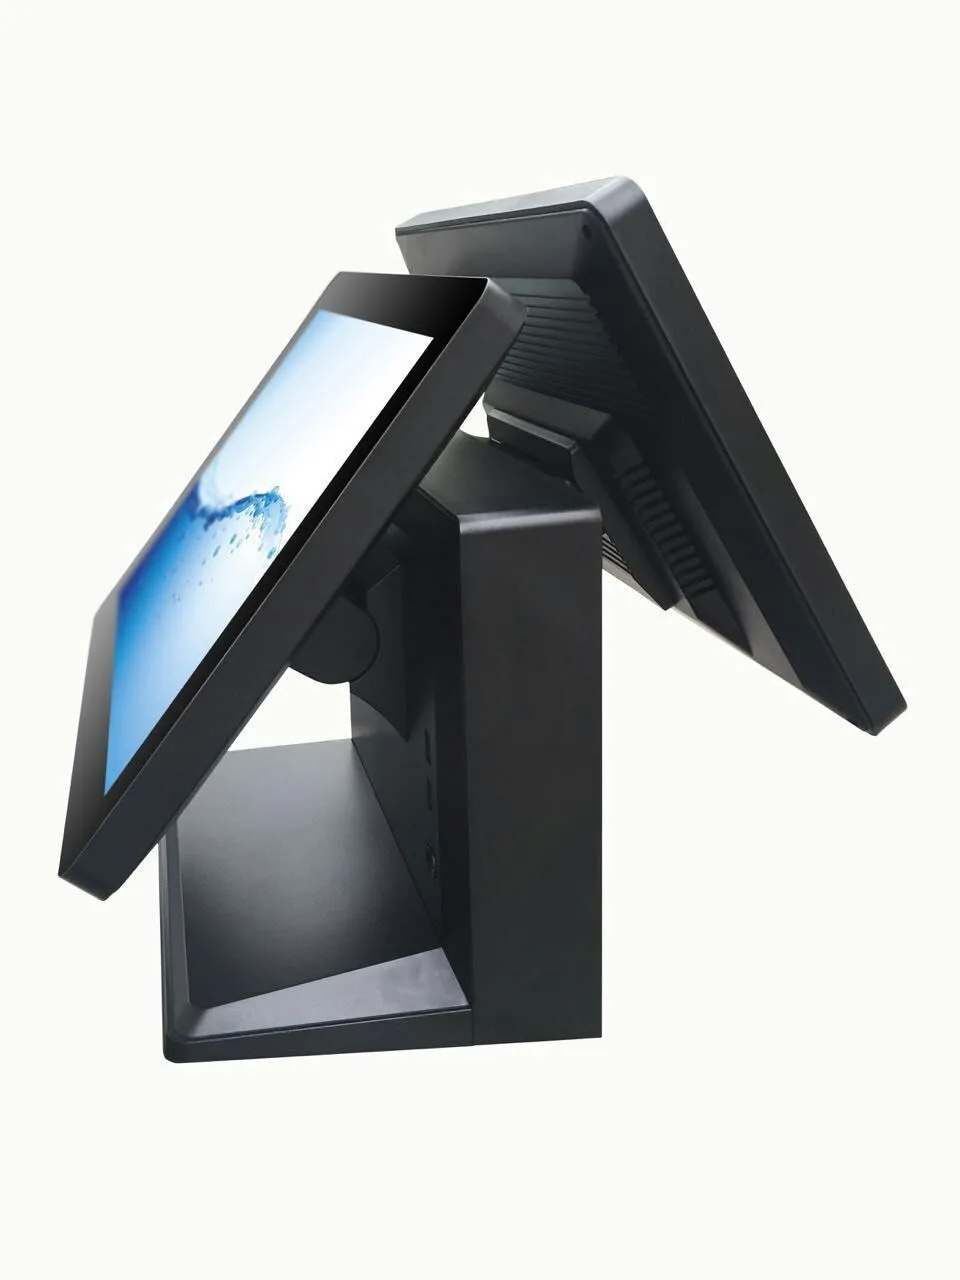 15 дюймов quad core windows сенсорный экран POS машина для ресторана